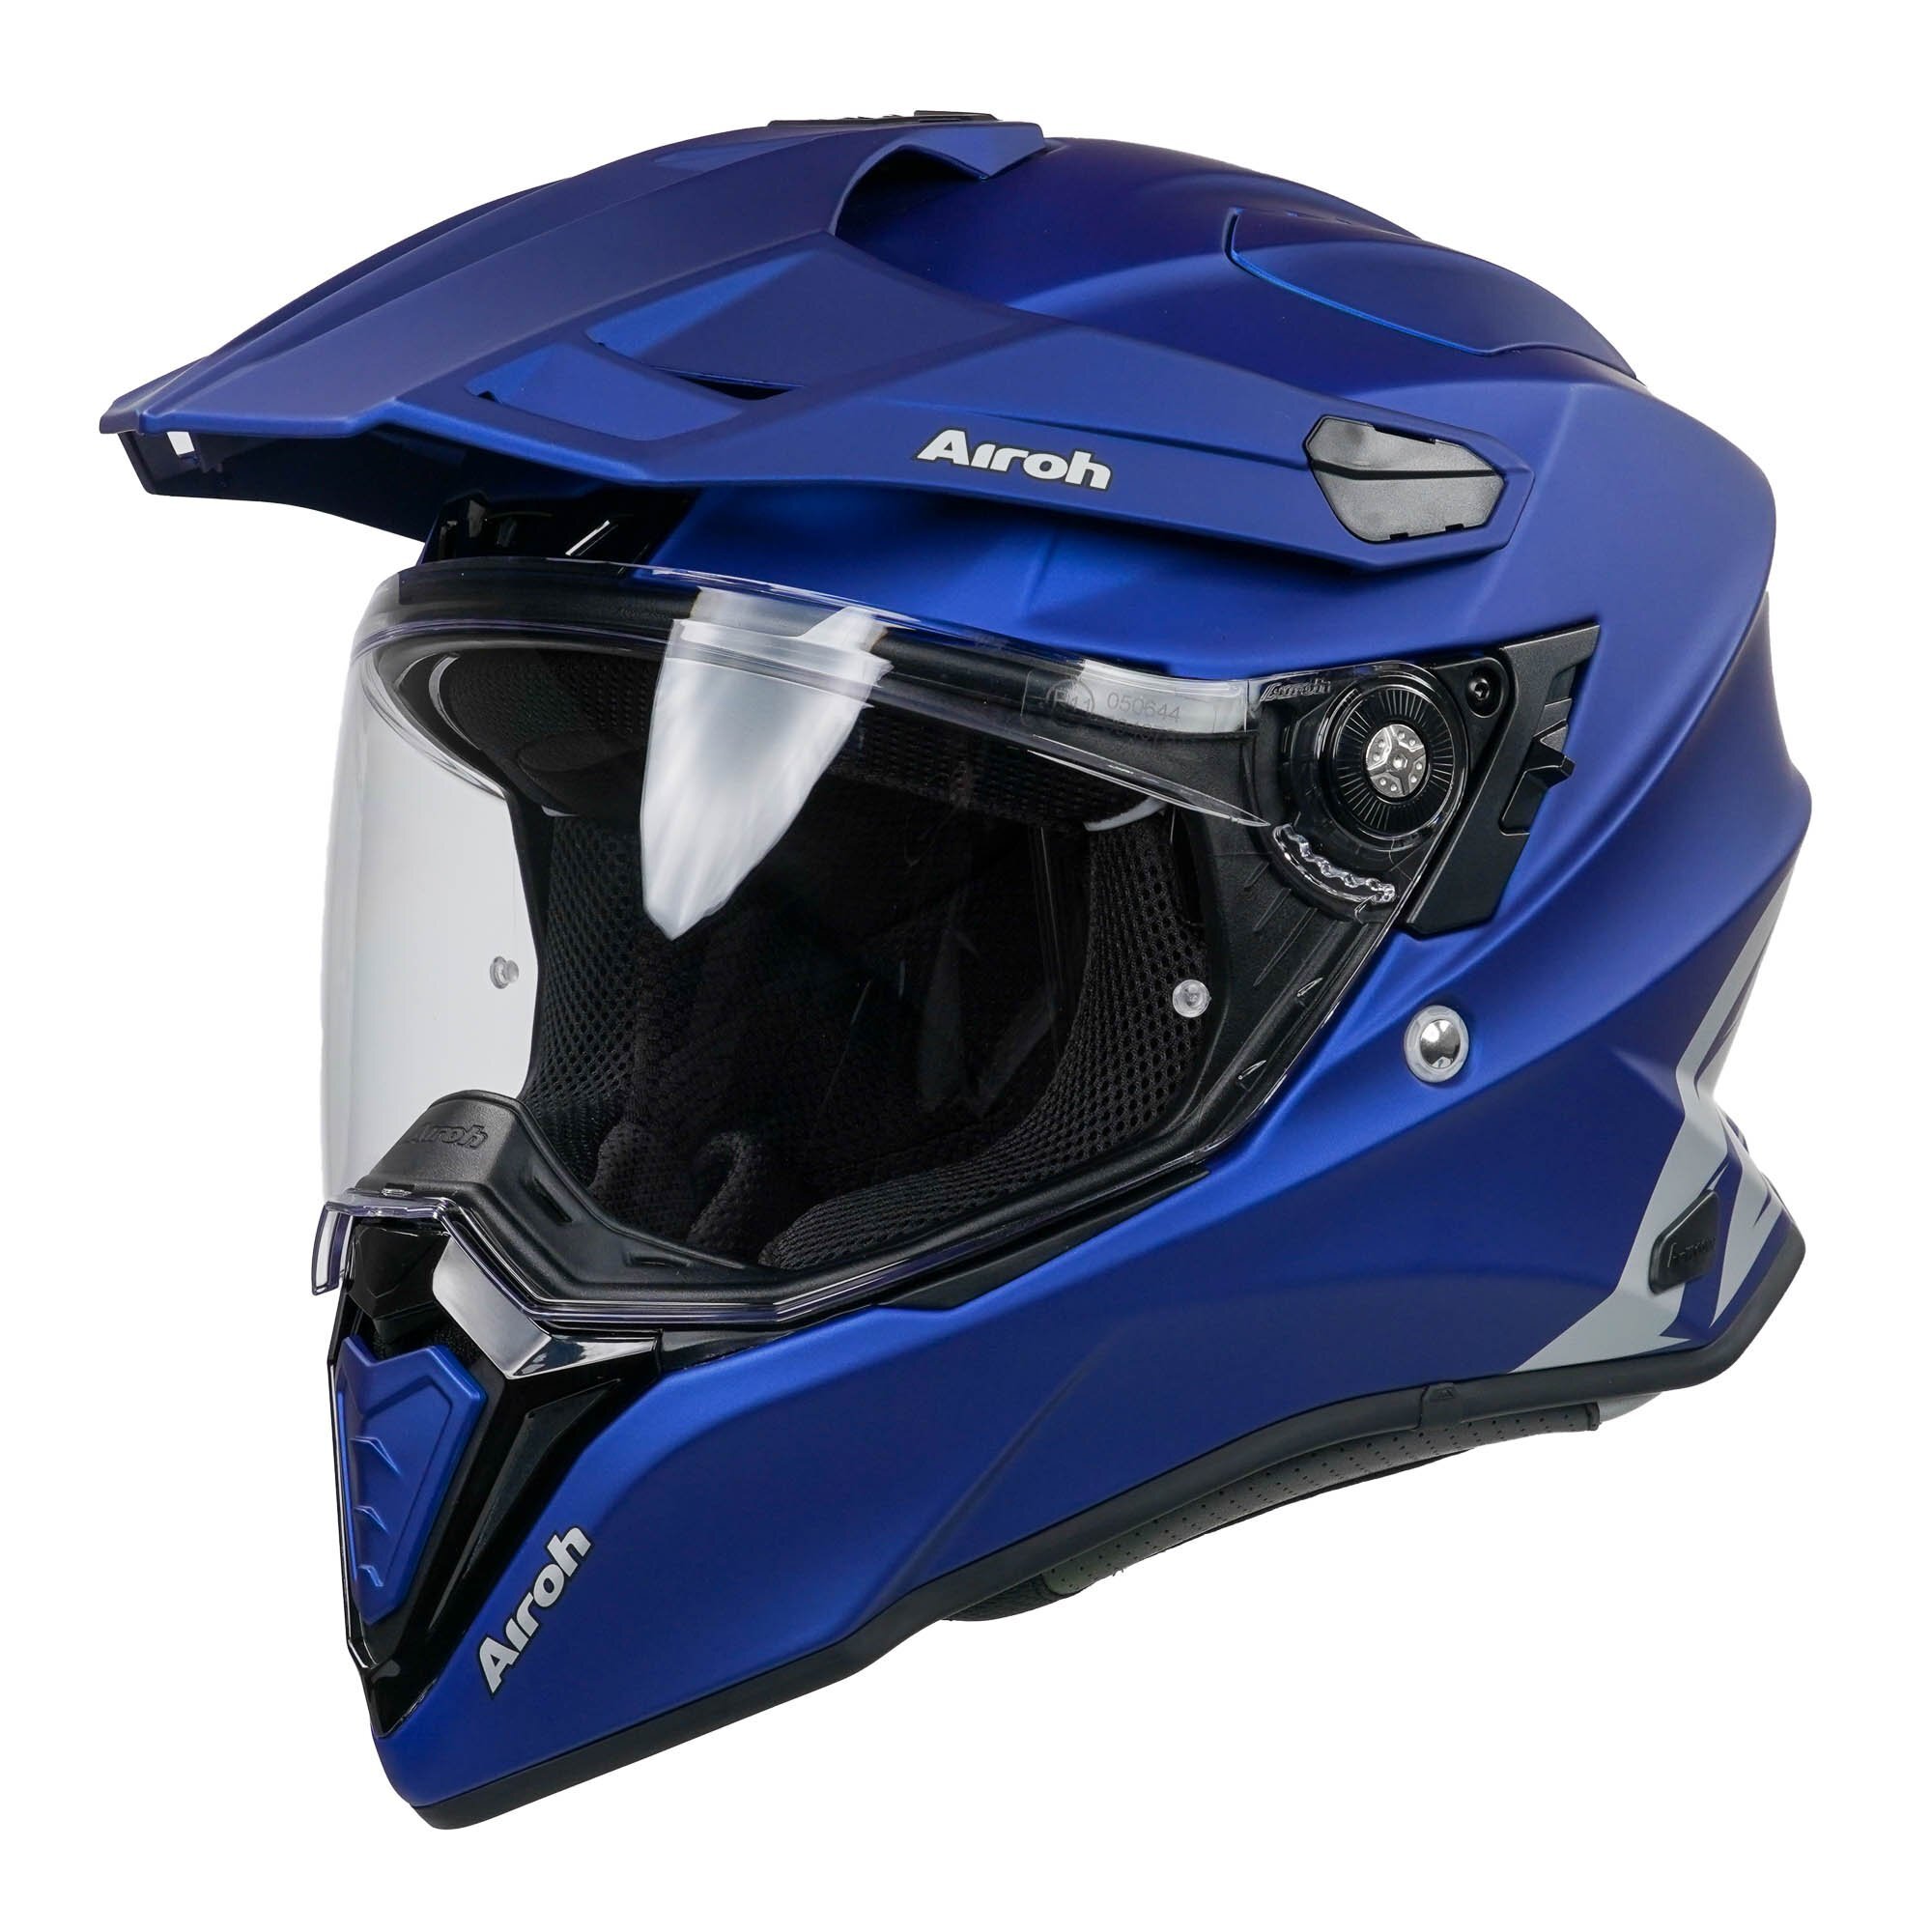 Airoh Casco moto Airoh Commander Progress blu opaco XL blue mat casque helmet 